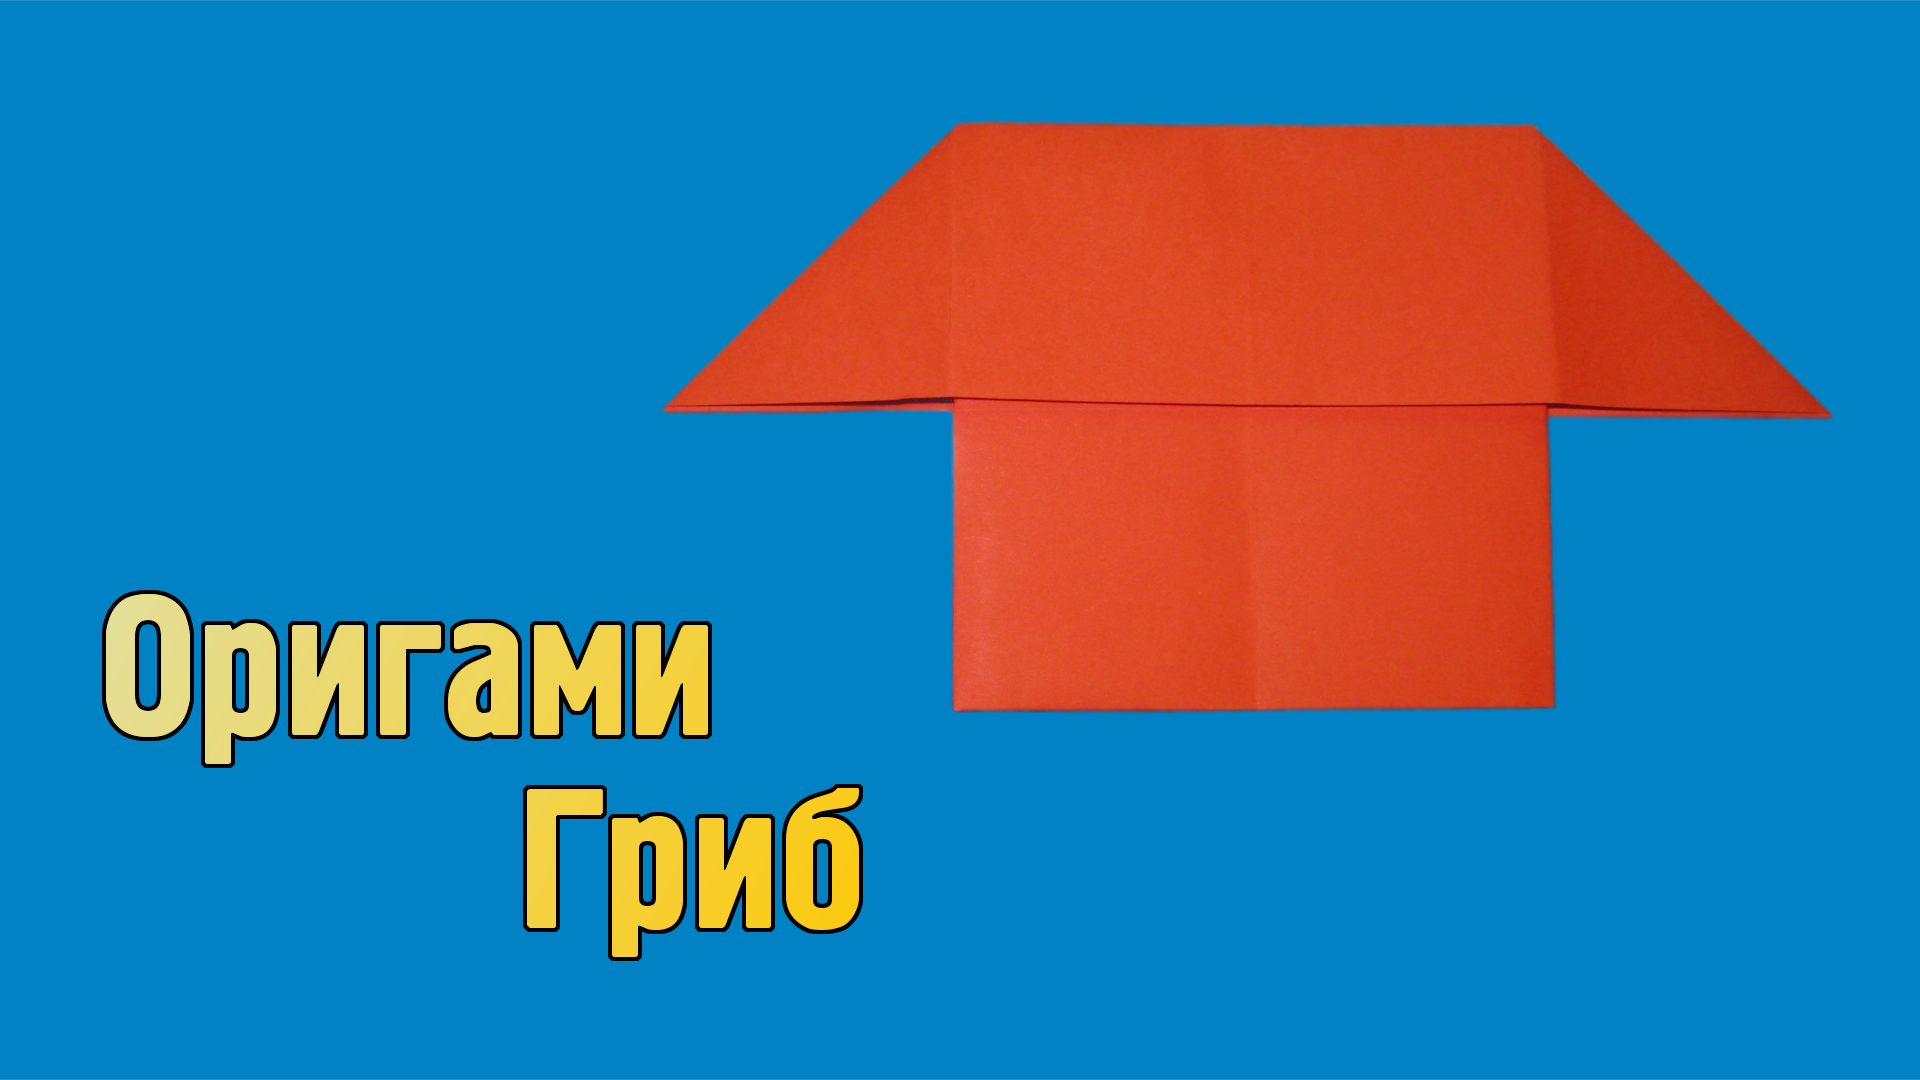 Как сделать Гриб из бумаги без клея | Простой оригами Гриб своими руками для детей из одного листа